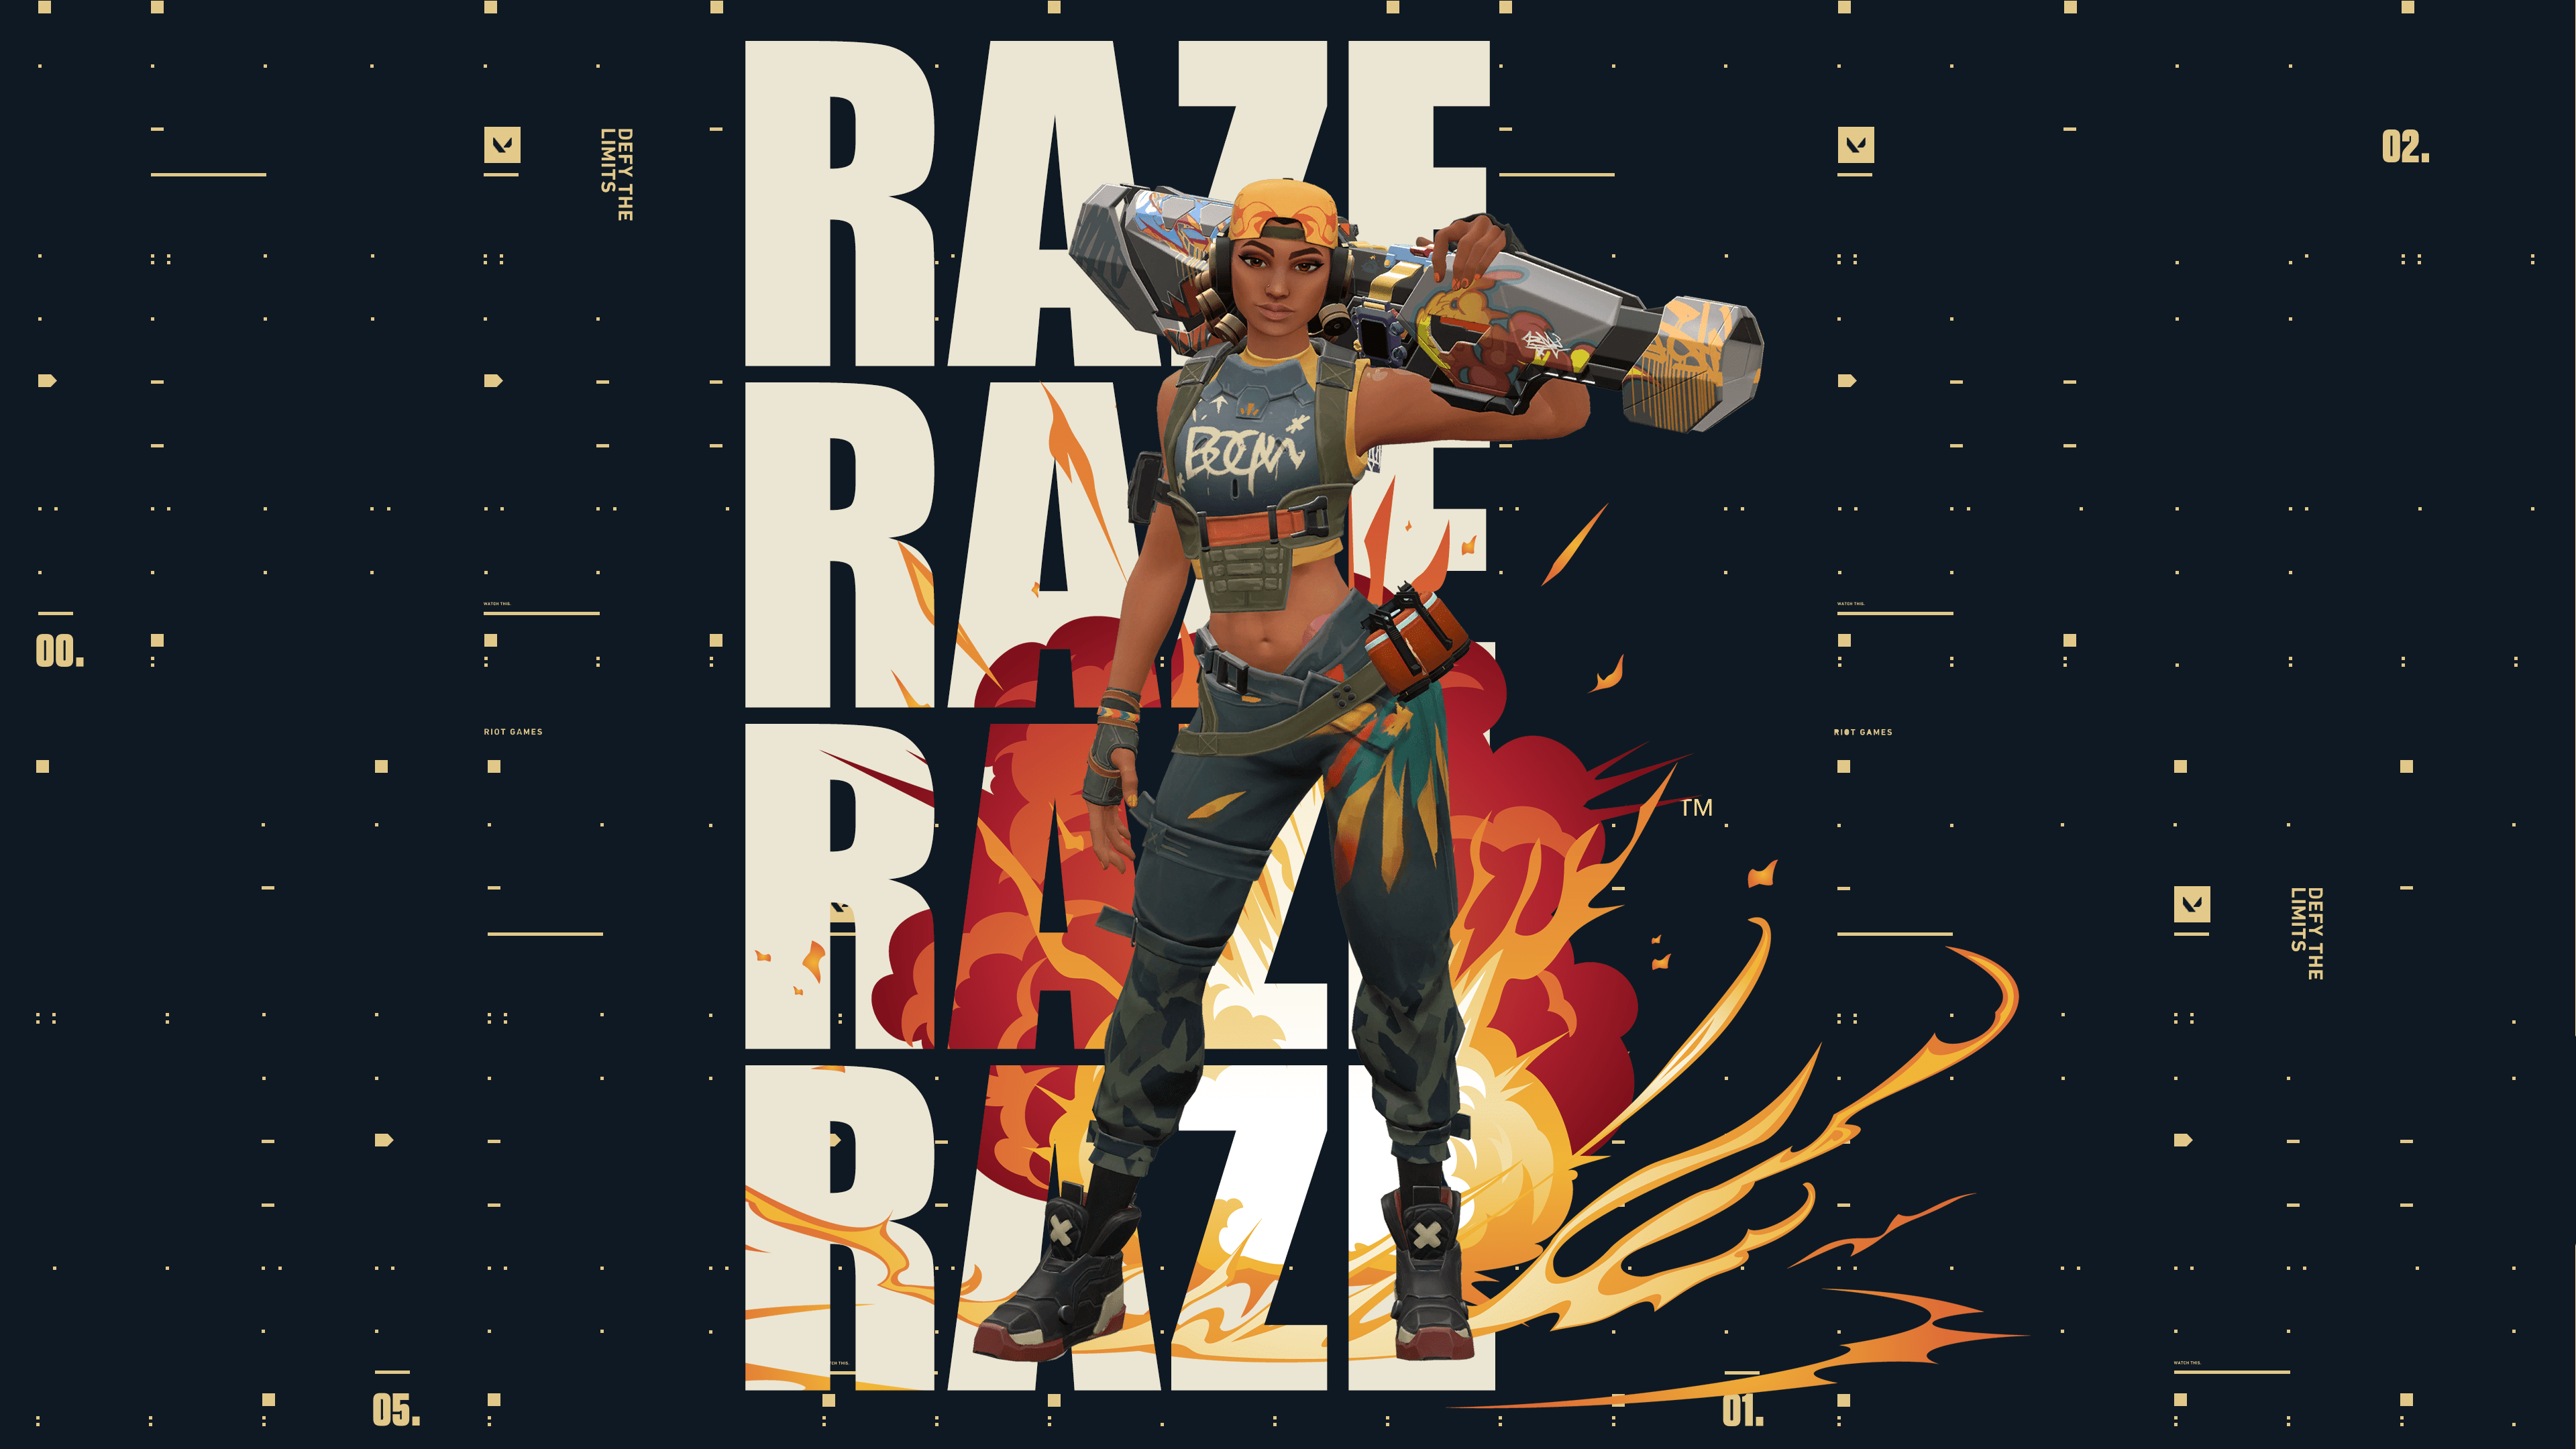 Raze Valorant - Wallpaper  Dragão guerreiro, Wallpaper, Personagem